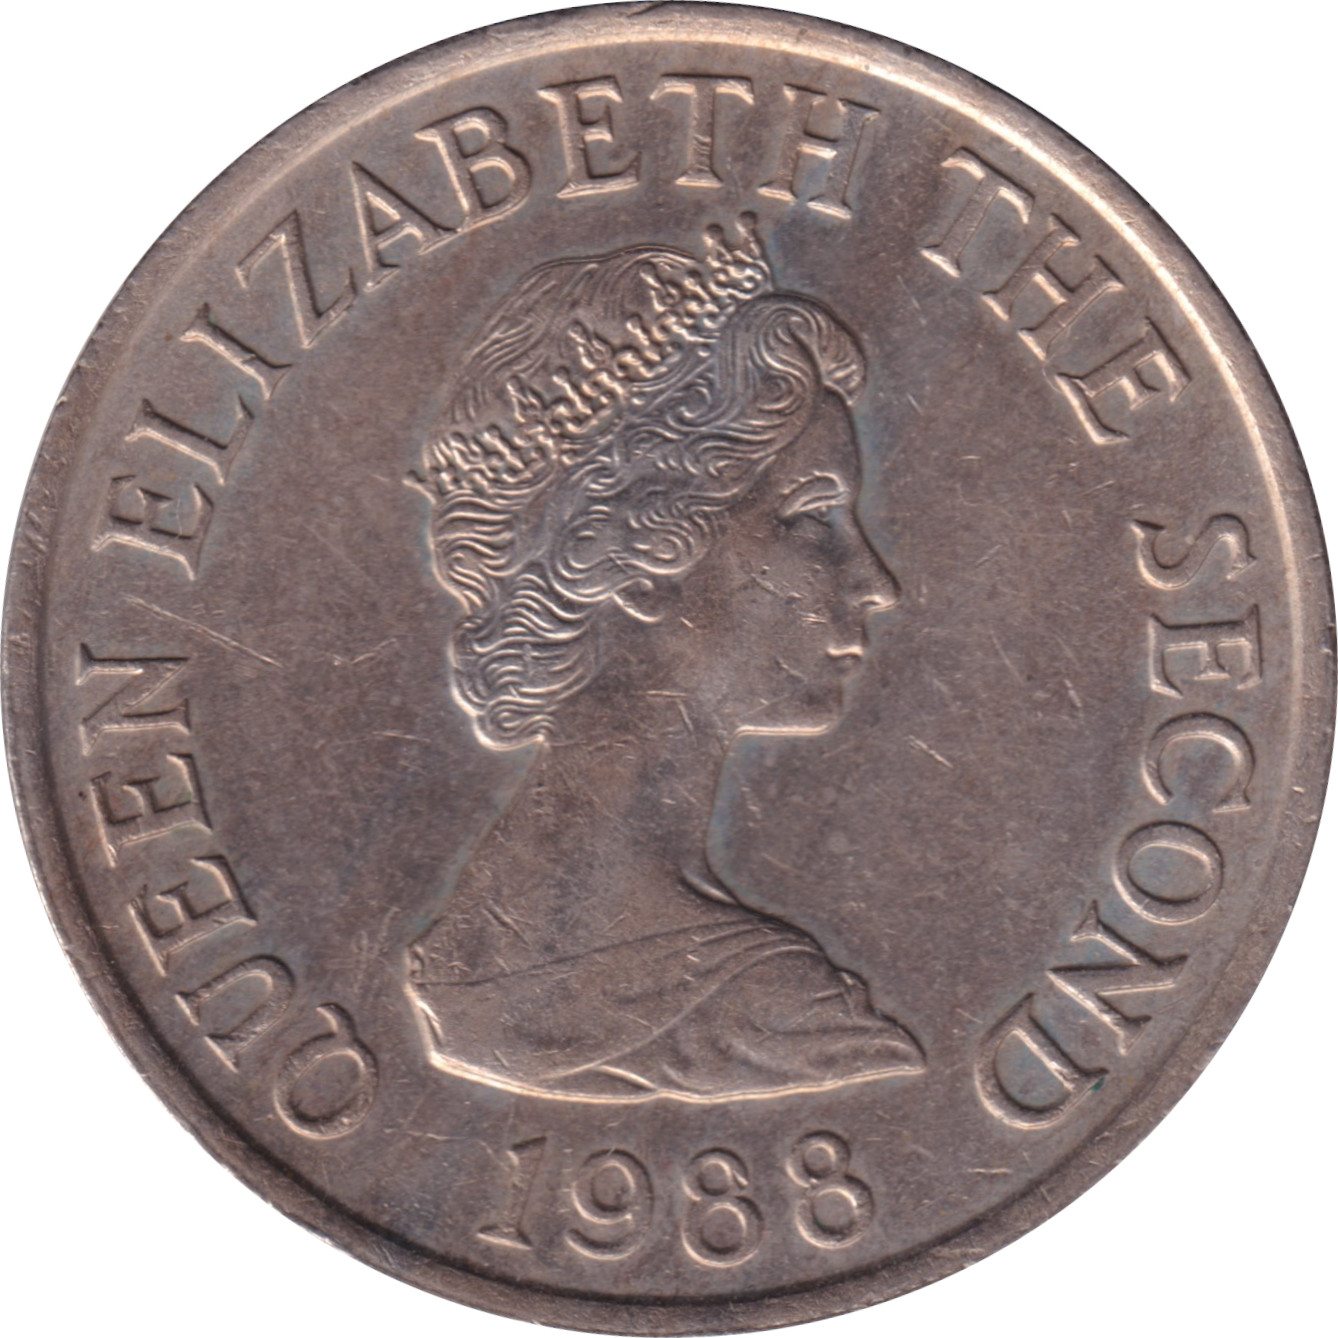 10 pence - Elizabeth II - Buste mature - Grand module